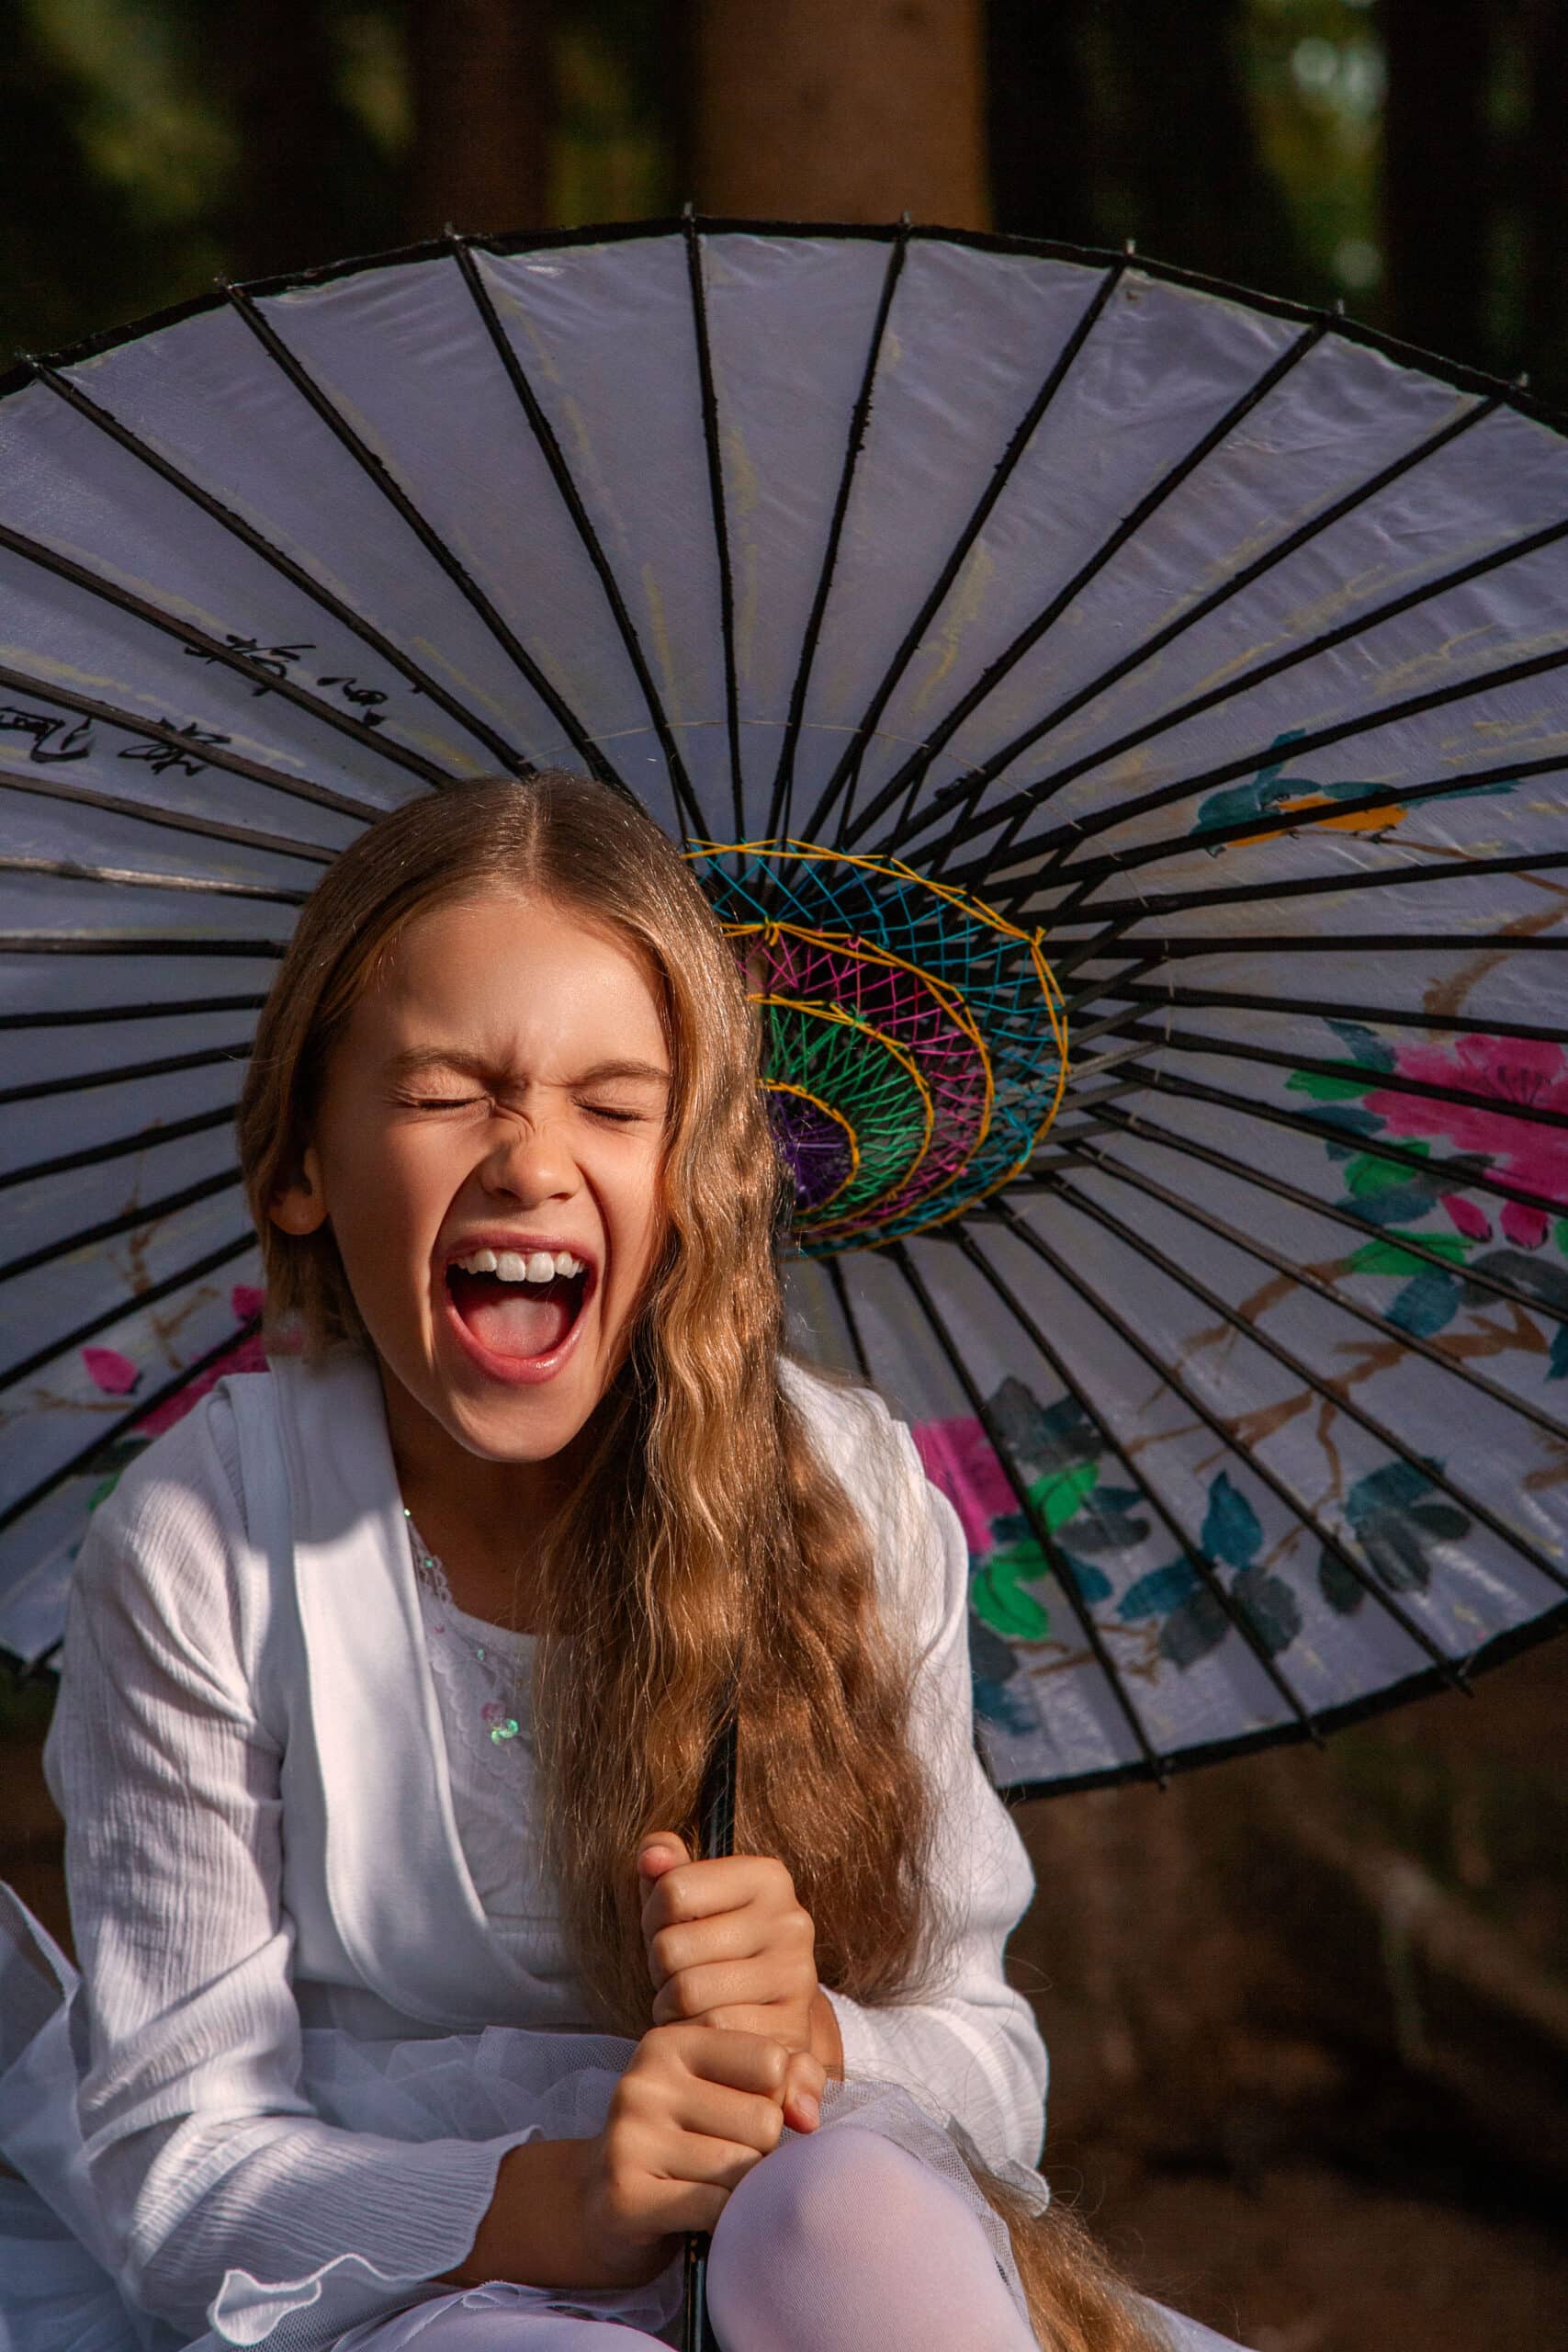 Ein junges Mädchen mit langen braunen Haaren lacht fröhlich, hält einen dekorativen weißen Regenschirm mit schwarzen und regenbogenfarbenen Akzenten und sitzt in einer sonnenbeschienenen Waldlandschaft. © Fotografie Tomas Rodriguez